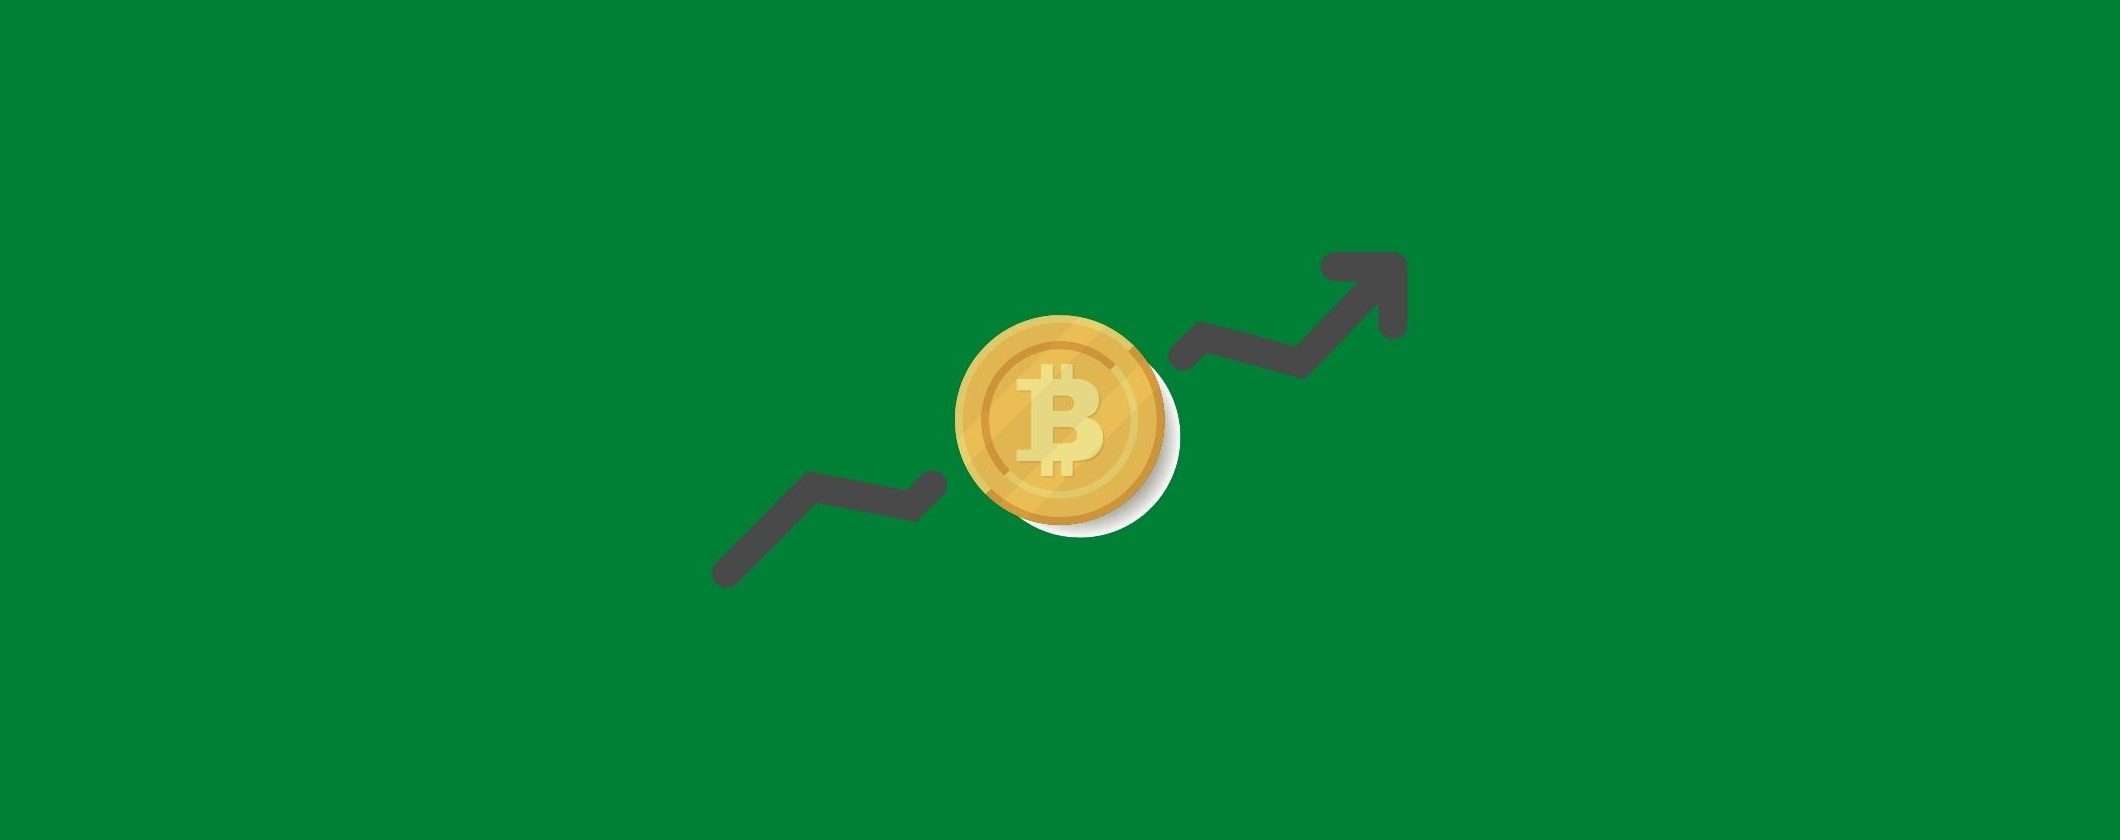 Bitcoin è cresciuto grazie a Binance: come guadagnare con l'exchange